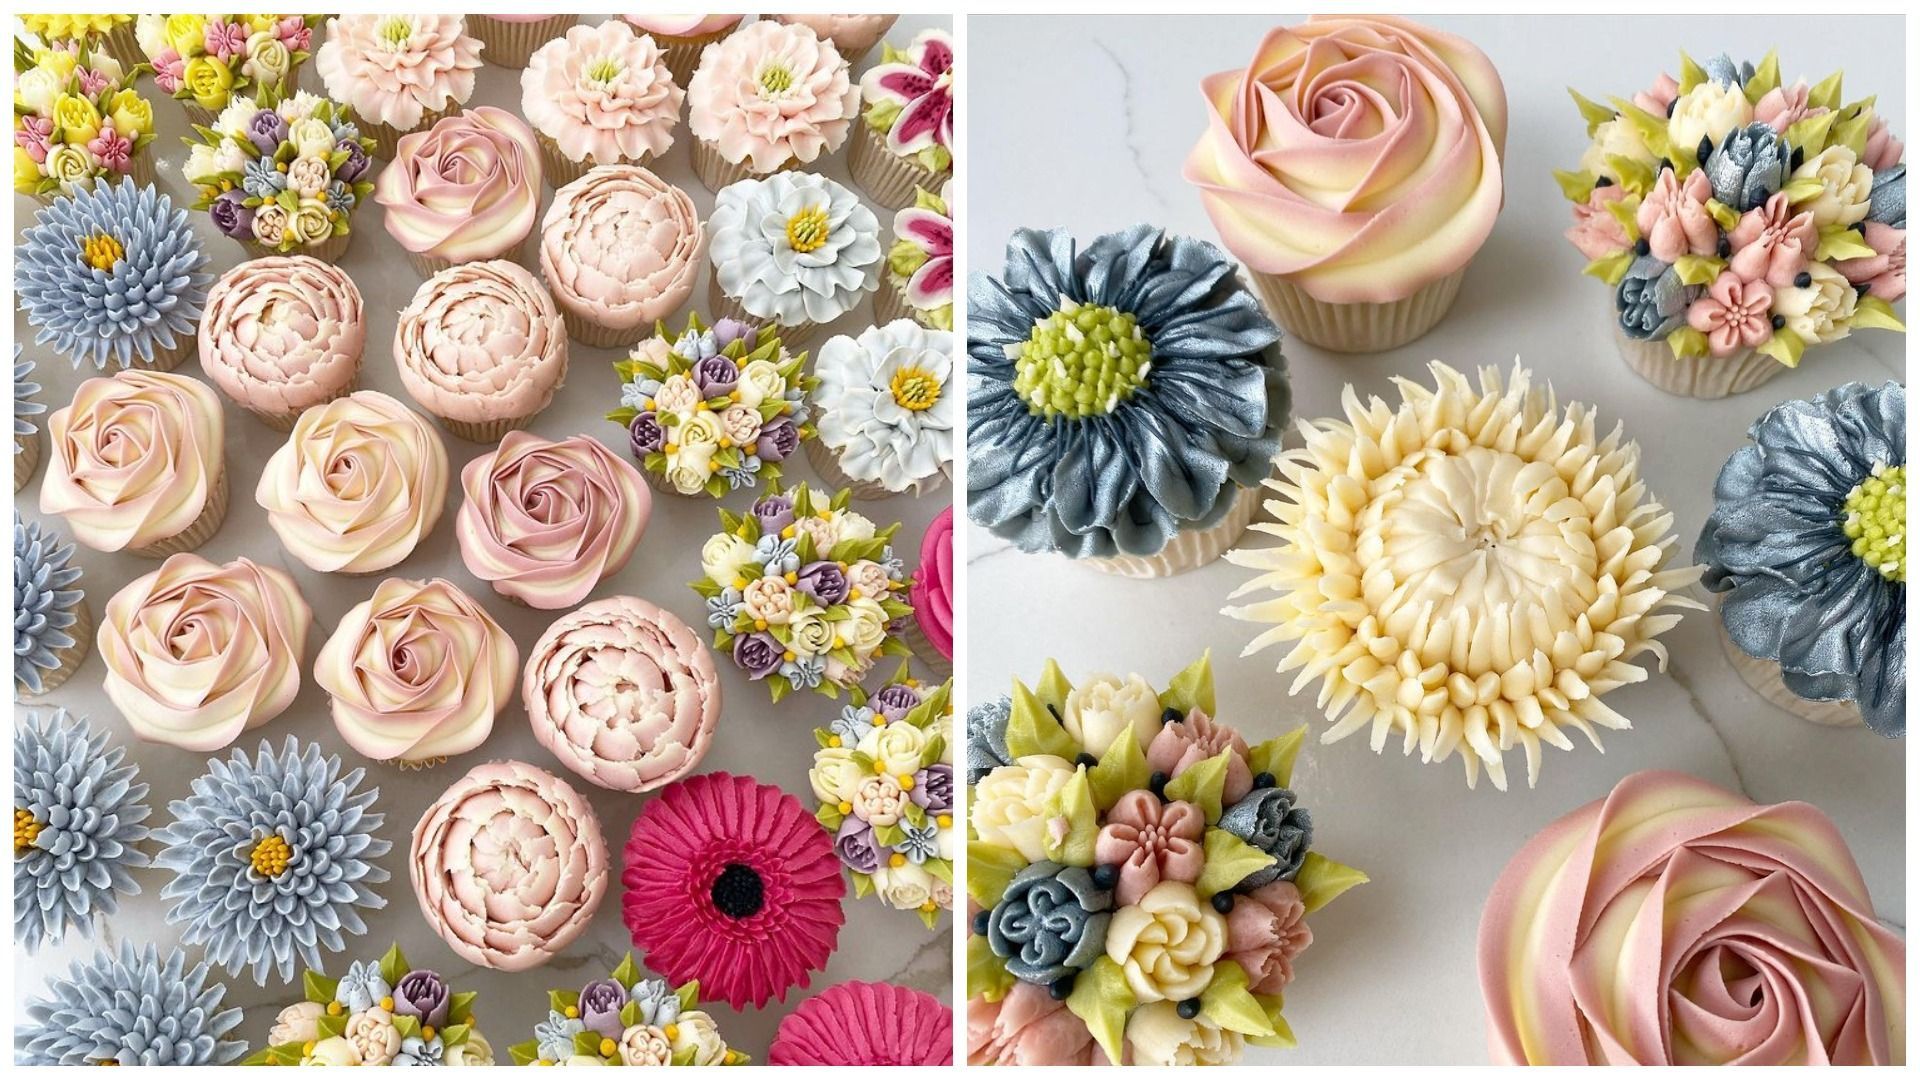 Кулинарка делает невероятные цветочные кексы